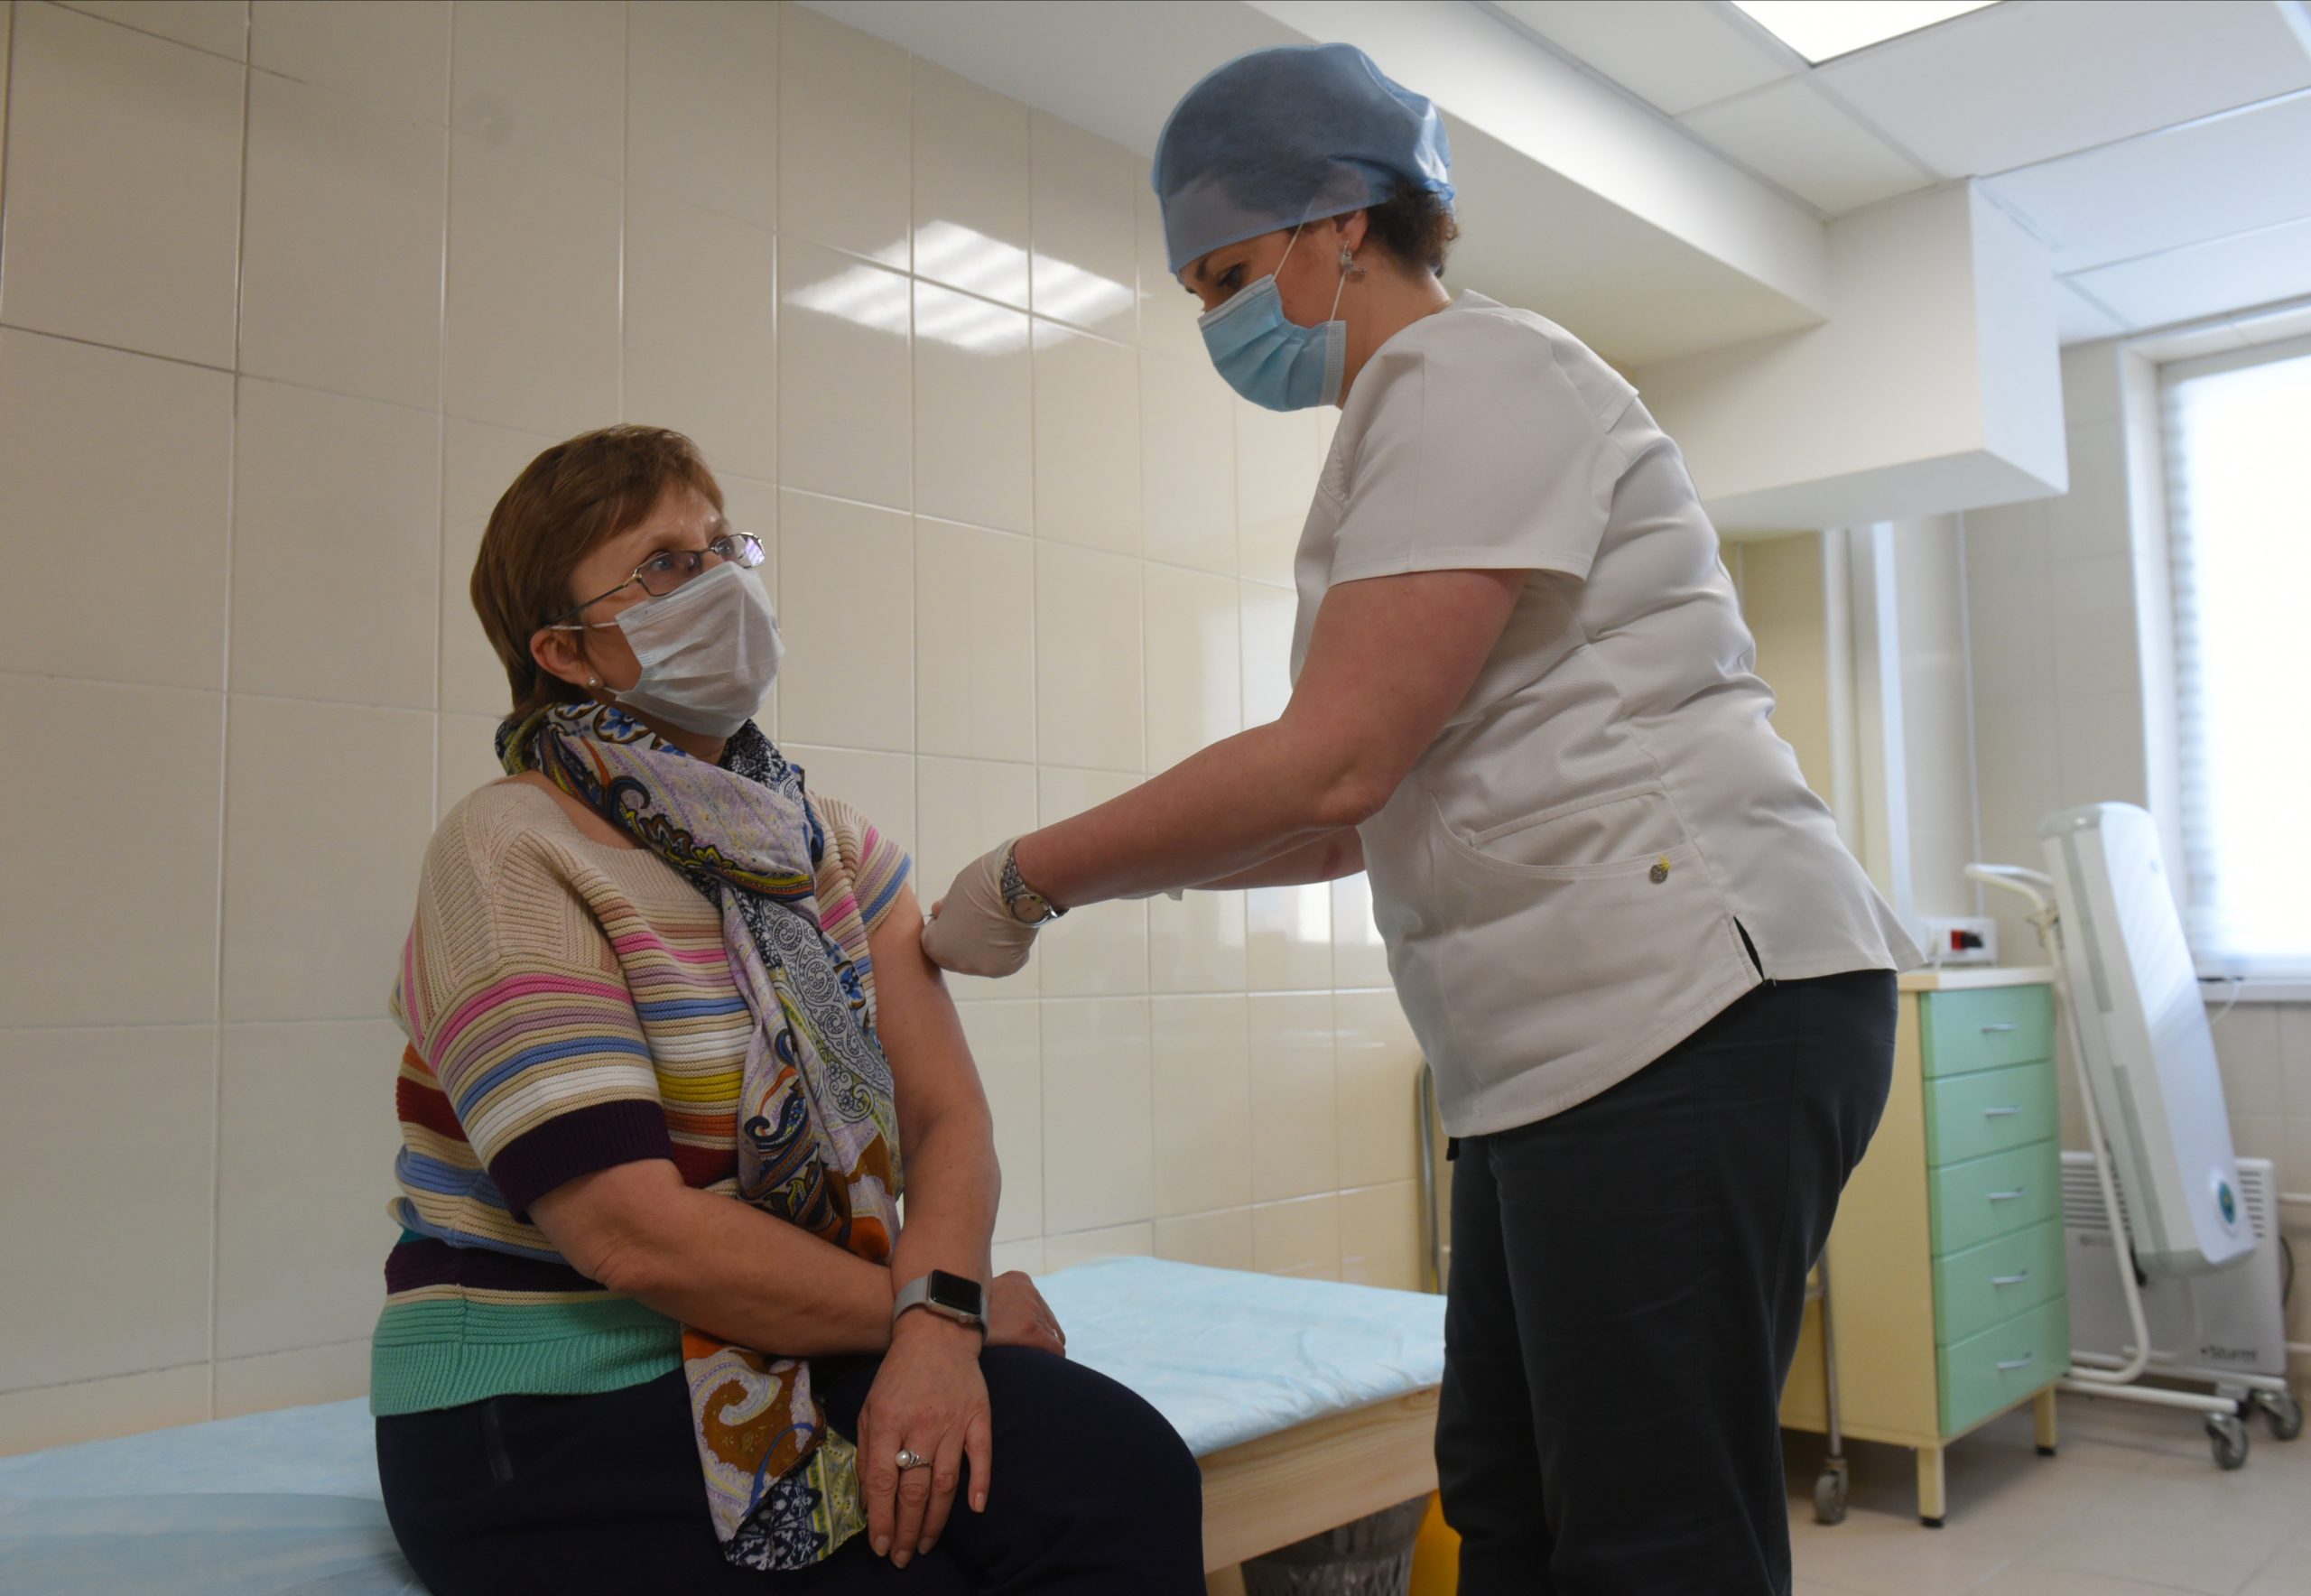 8 февраля 2021 года. Медсестра Лариса Галкина делает прививку от коронавирусной инфекции москвичке Елене Никоновой. Фото: Александр Кожохин